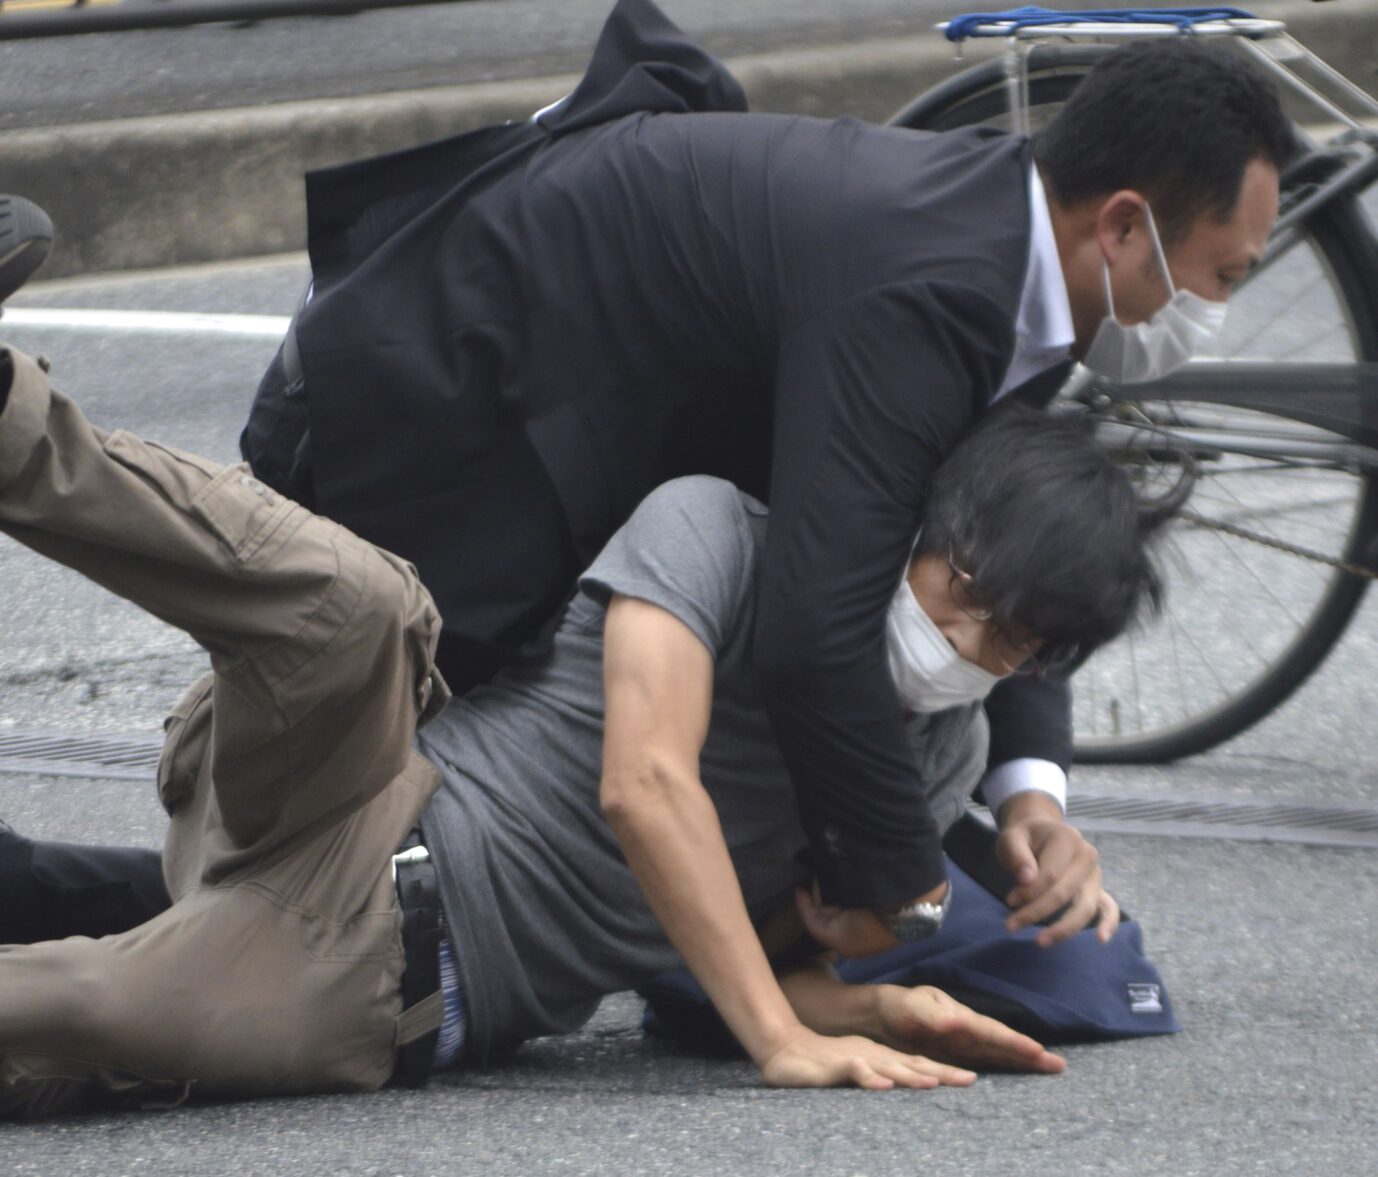 Der Attentäter wird von Sicherheitskräften überwältigt und festgenommen Foto: picture alliance / ASSOCIATED PRESS | Kazuhiko Hirano